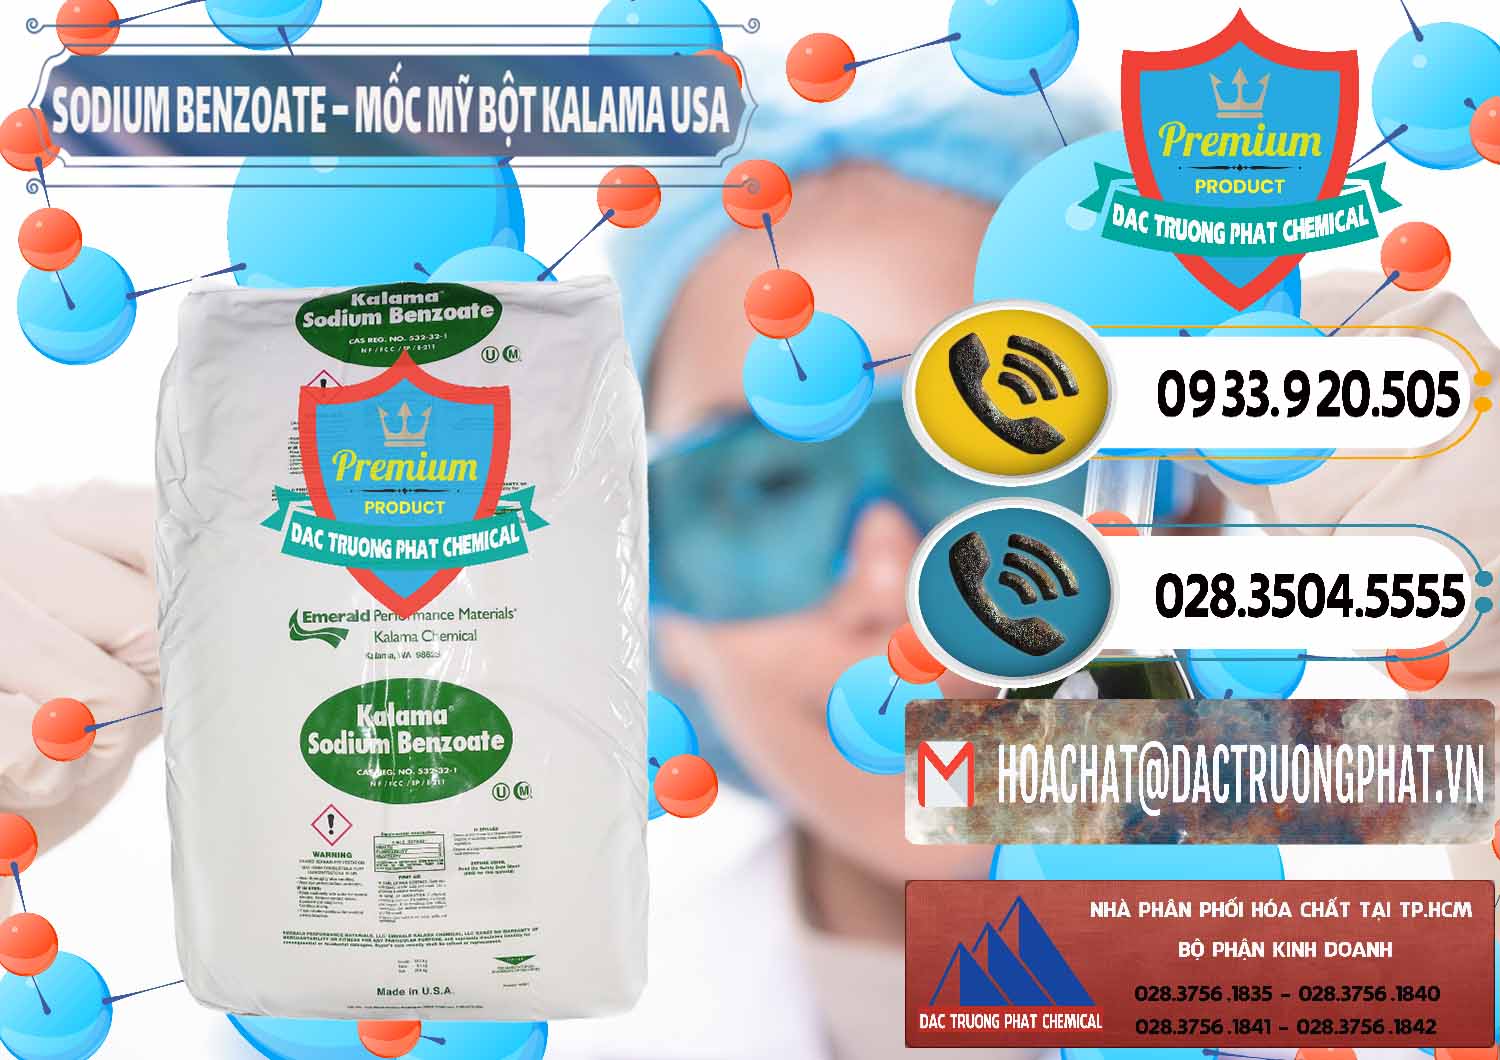 Nơi nhập khẩu _ bán Sodium Benzoate - Mốc Bột Kalama Food Grade Mỹ Usa - 0136 - Cty chuyên bán và phân phối hóa chất tại TP.HCM - hoachatdetnhuom.vn